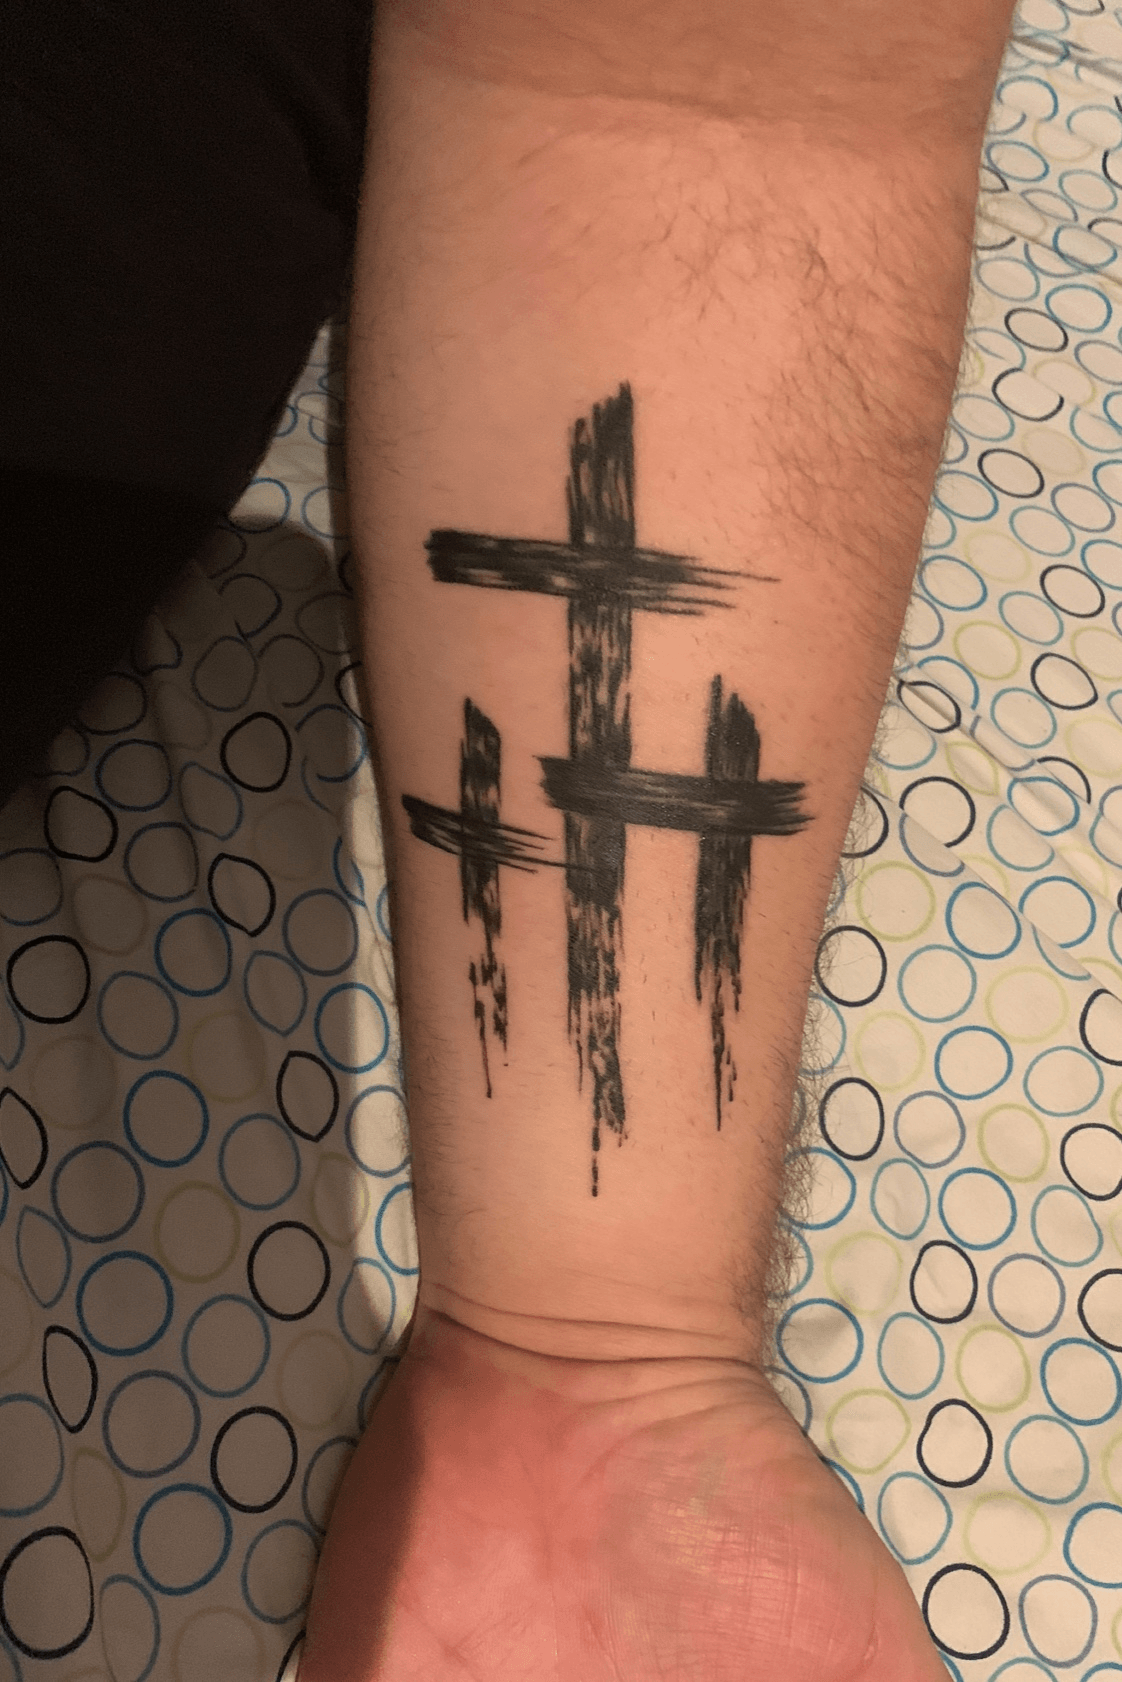 3 Wooden Crosses Tattoo by rupintartcom  Tattoogridnet